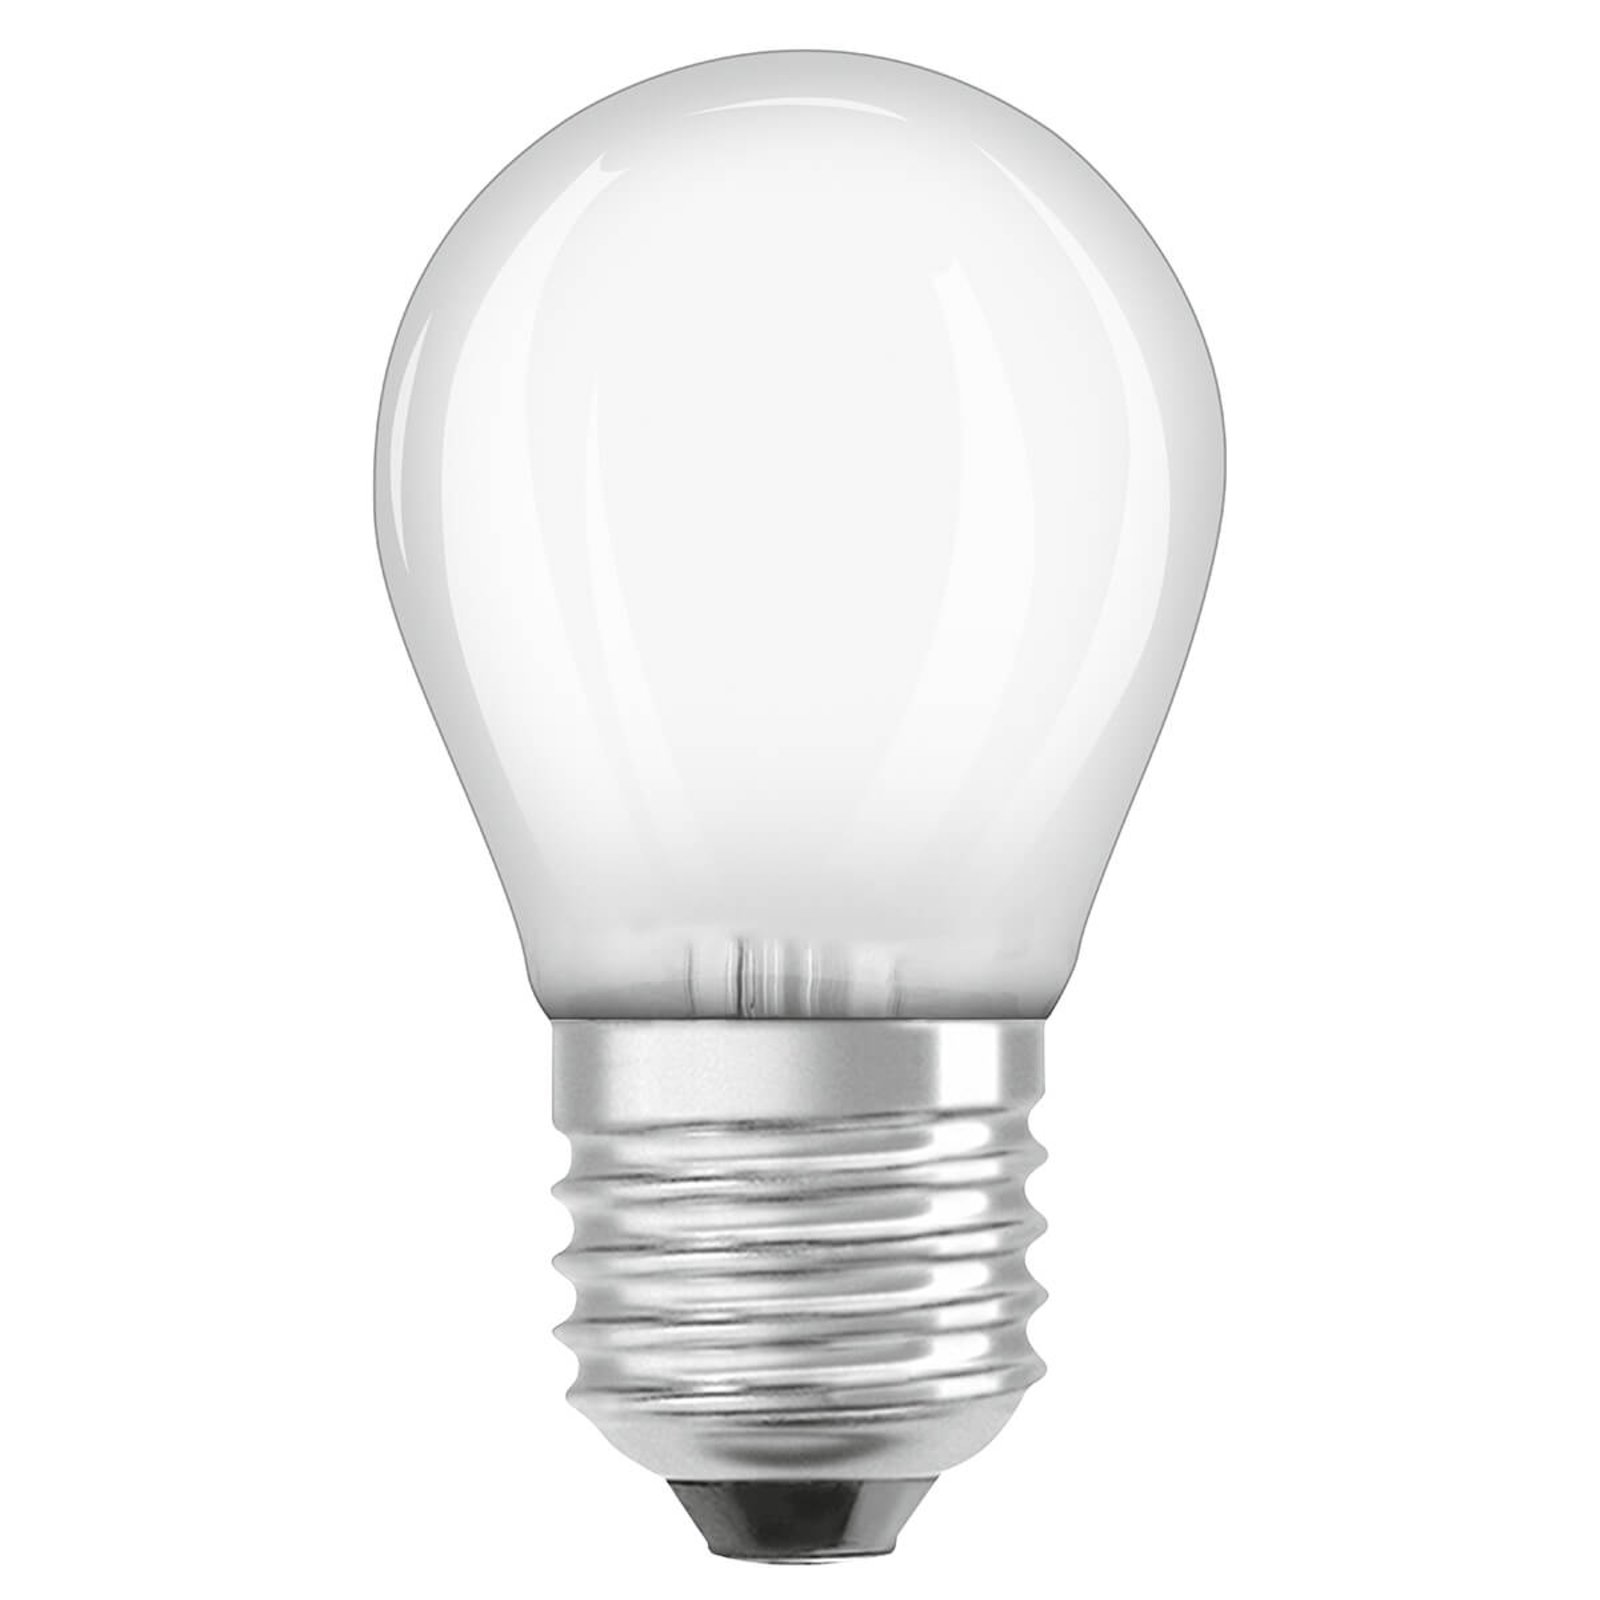 OSRAM LED lašelinė lempa E27 4,8 W 827, reguliuojamo ryškumo